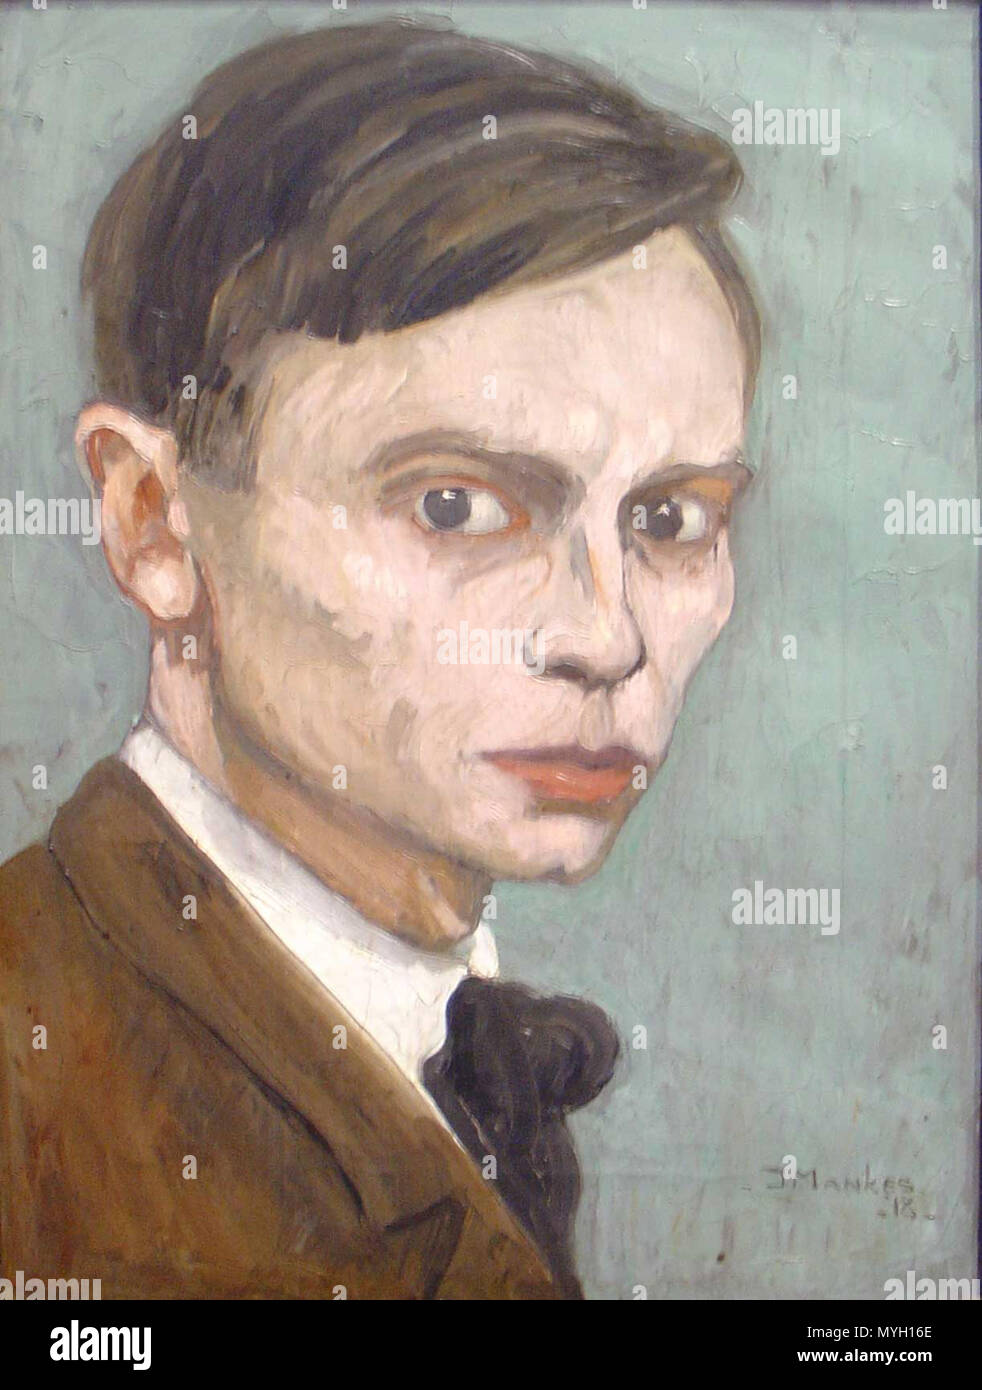 . Nederlands: Zelfportret van Jan Mankes inglese: autoritratto di Jan Mankes . 1918. Gouwenaar 267 Jan Mankes zelfportret Foto Stock